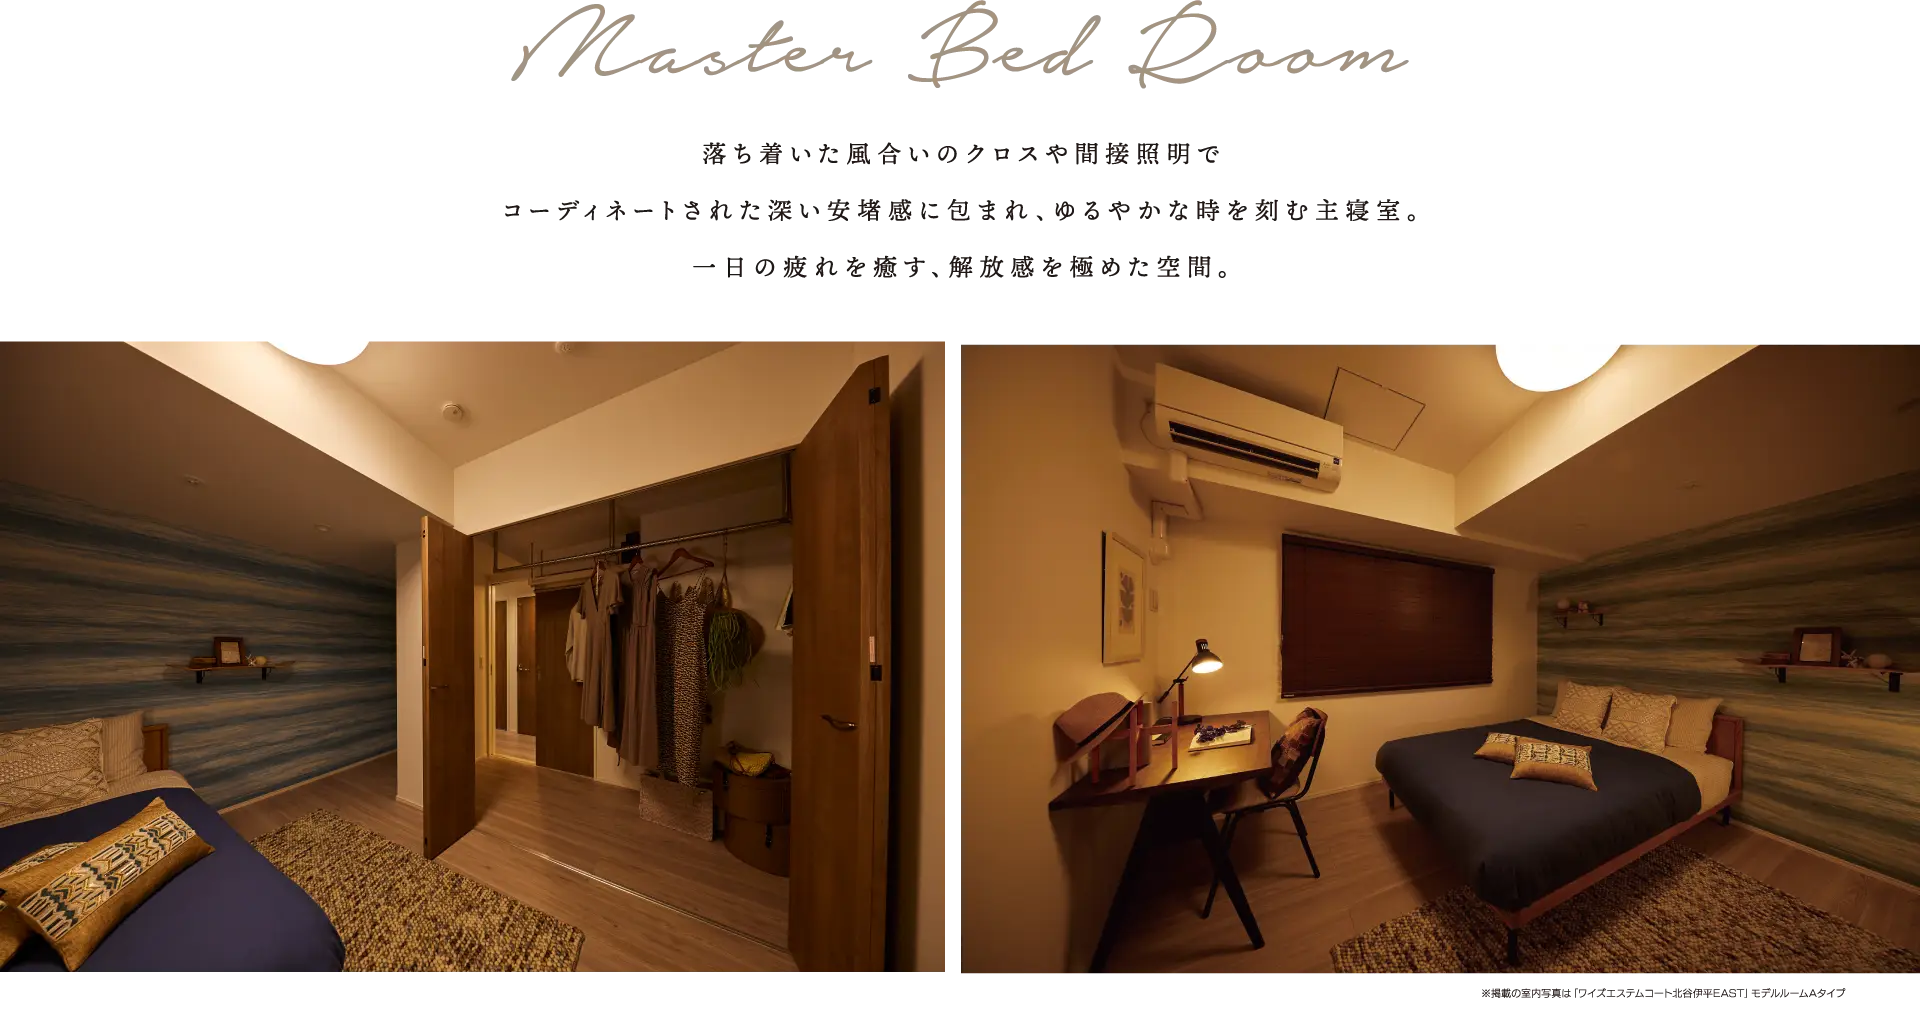 Master Bed Room 落ち着いた風合いのクロスや間接照明でコーディネートされた深い安堵感に包まれ、ゆるやかな時を刻む主寝室。一日の疲れを癒す、解放感を極めた空間。